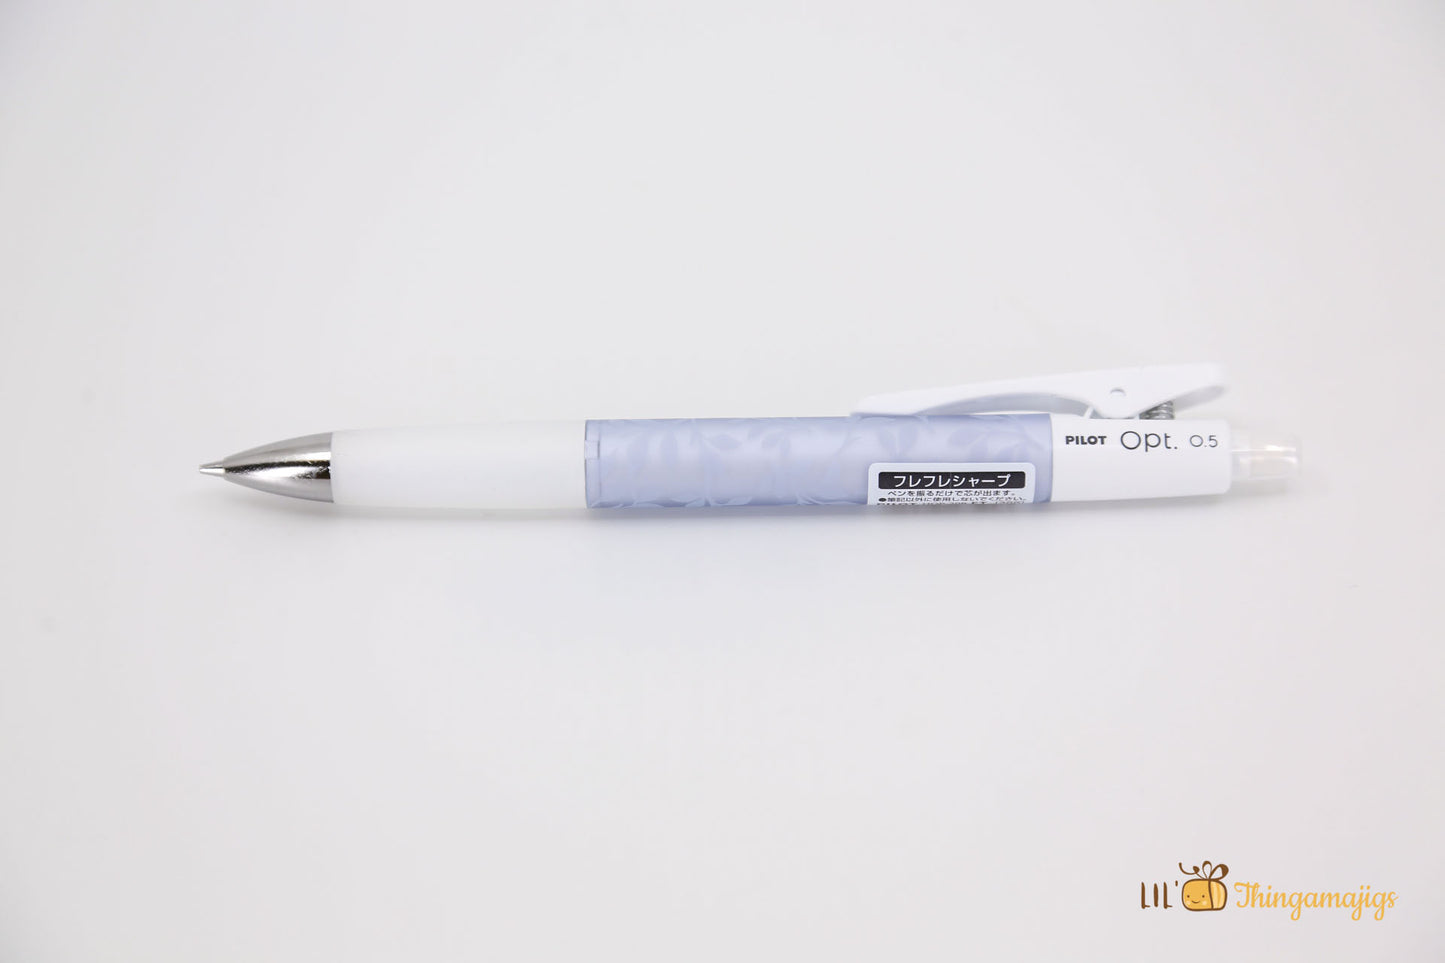 Pilot Opt Shaker Mechanical Pencil - 0.5mm